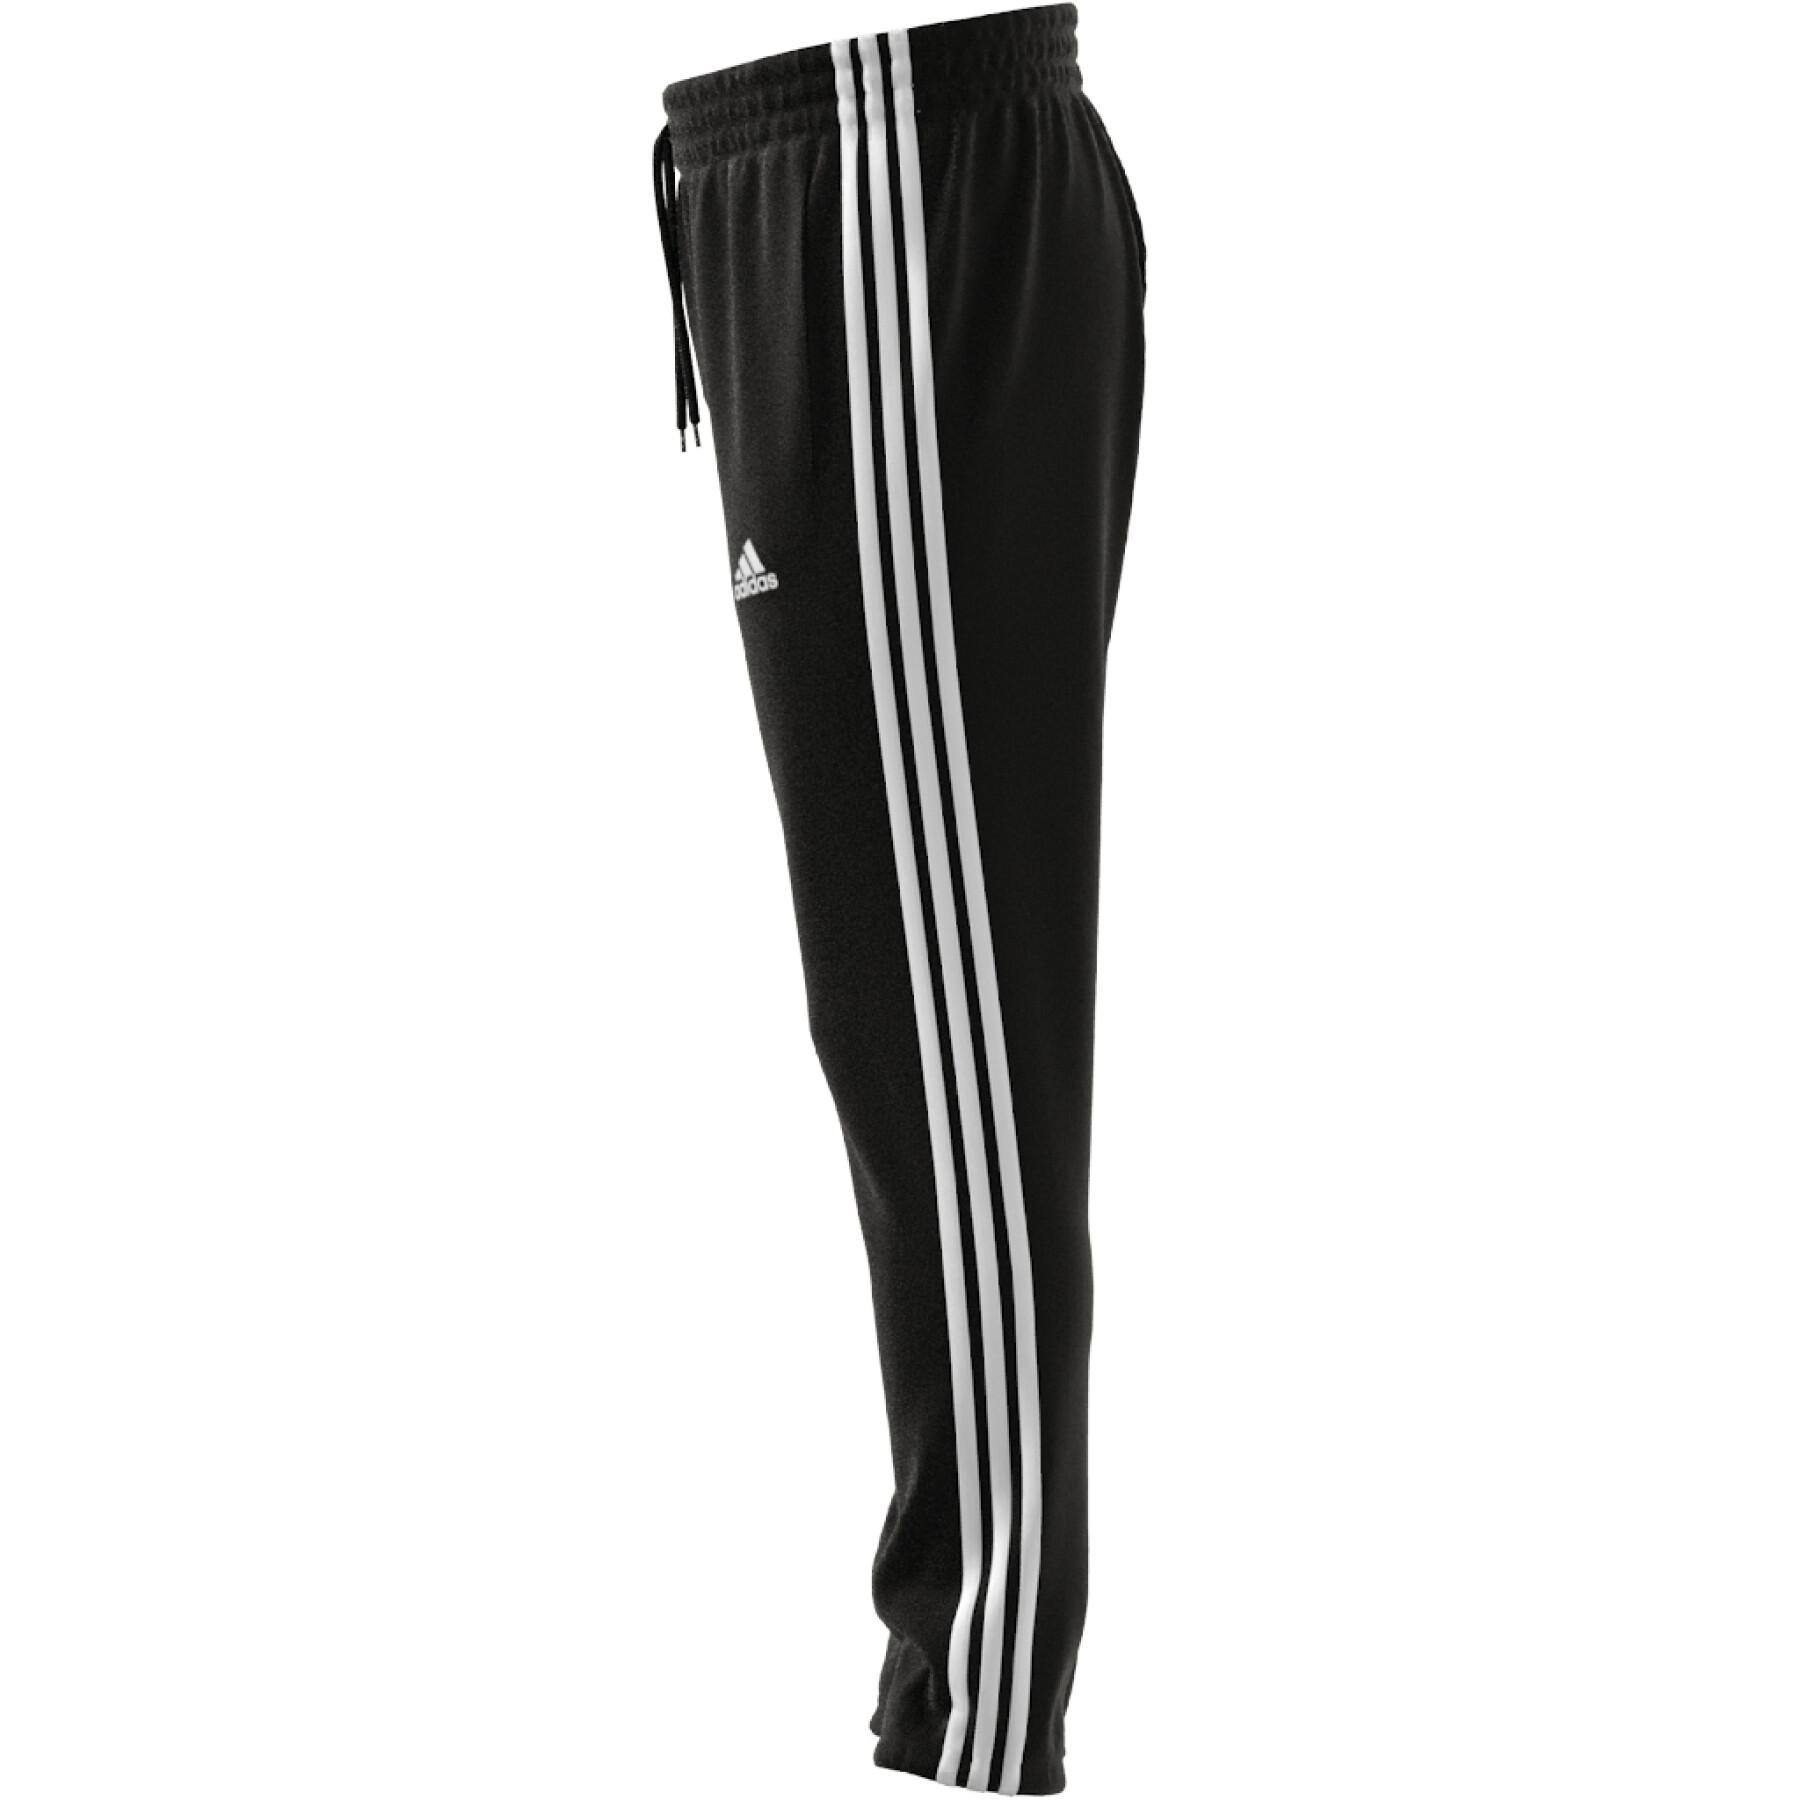 Jogging spindelförmig mit elastischen Ärmelbündchen adidas Essentials 3-Stripes